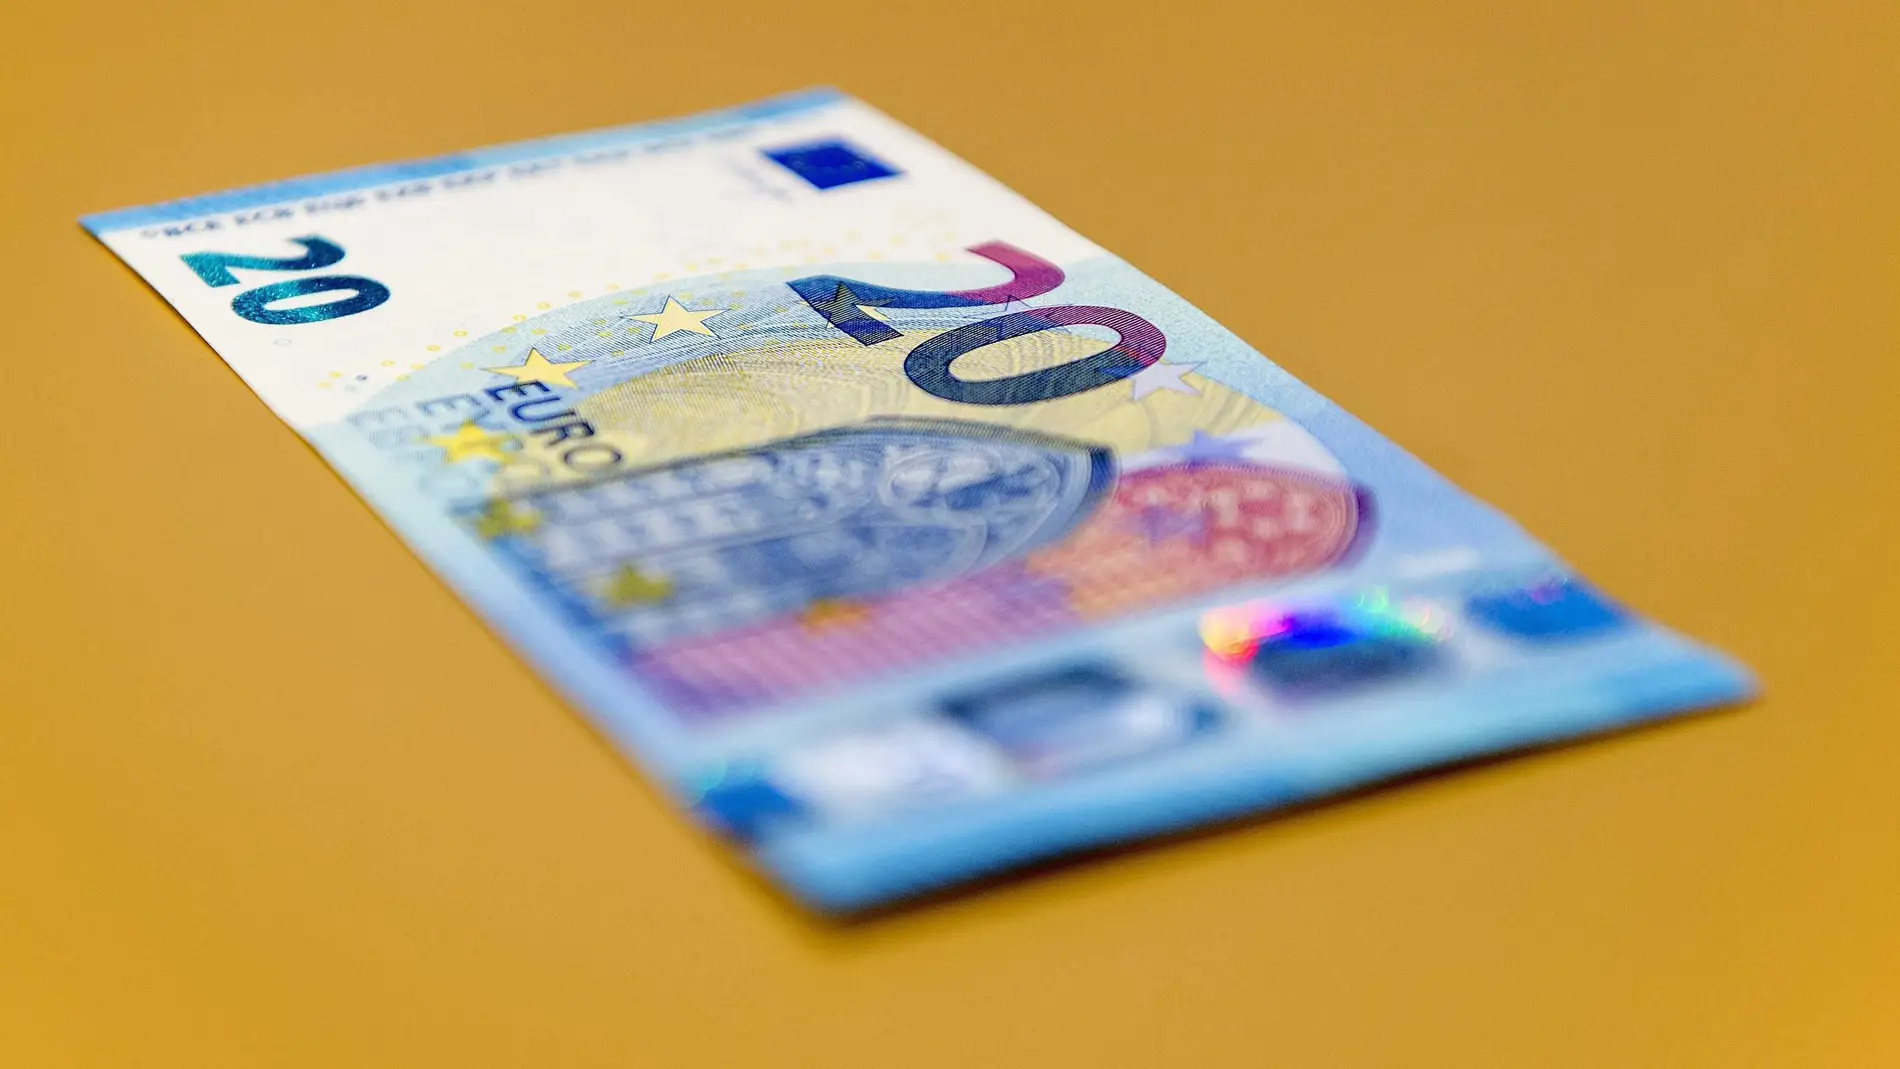 Entran en circulación los nuevos billetes de 10 euros - Eude Business School